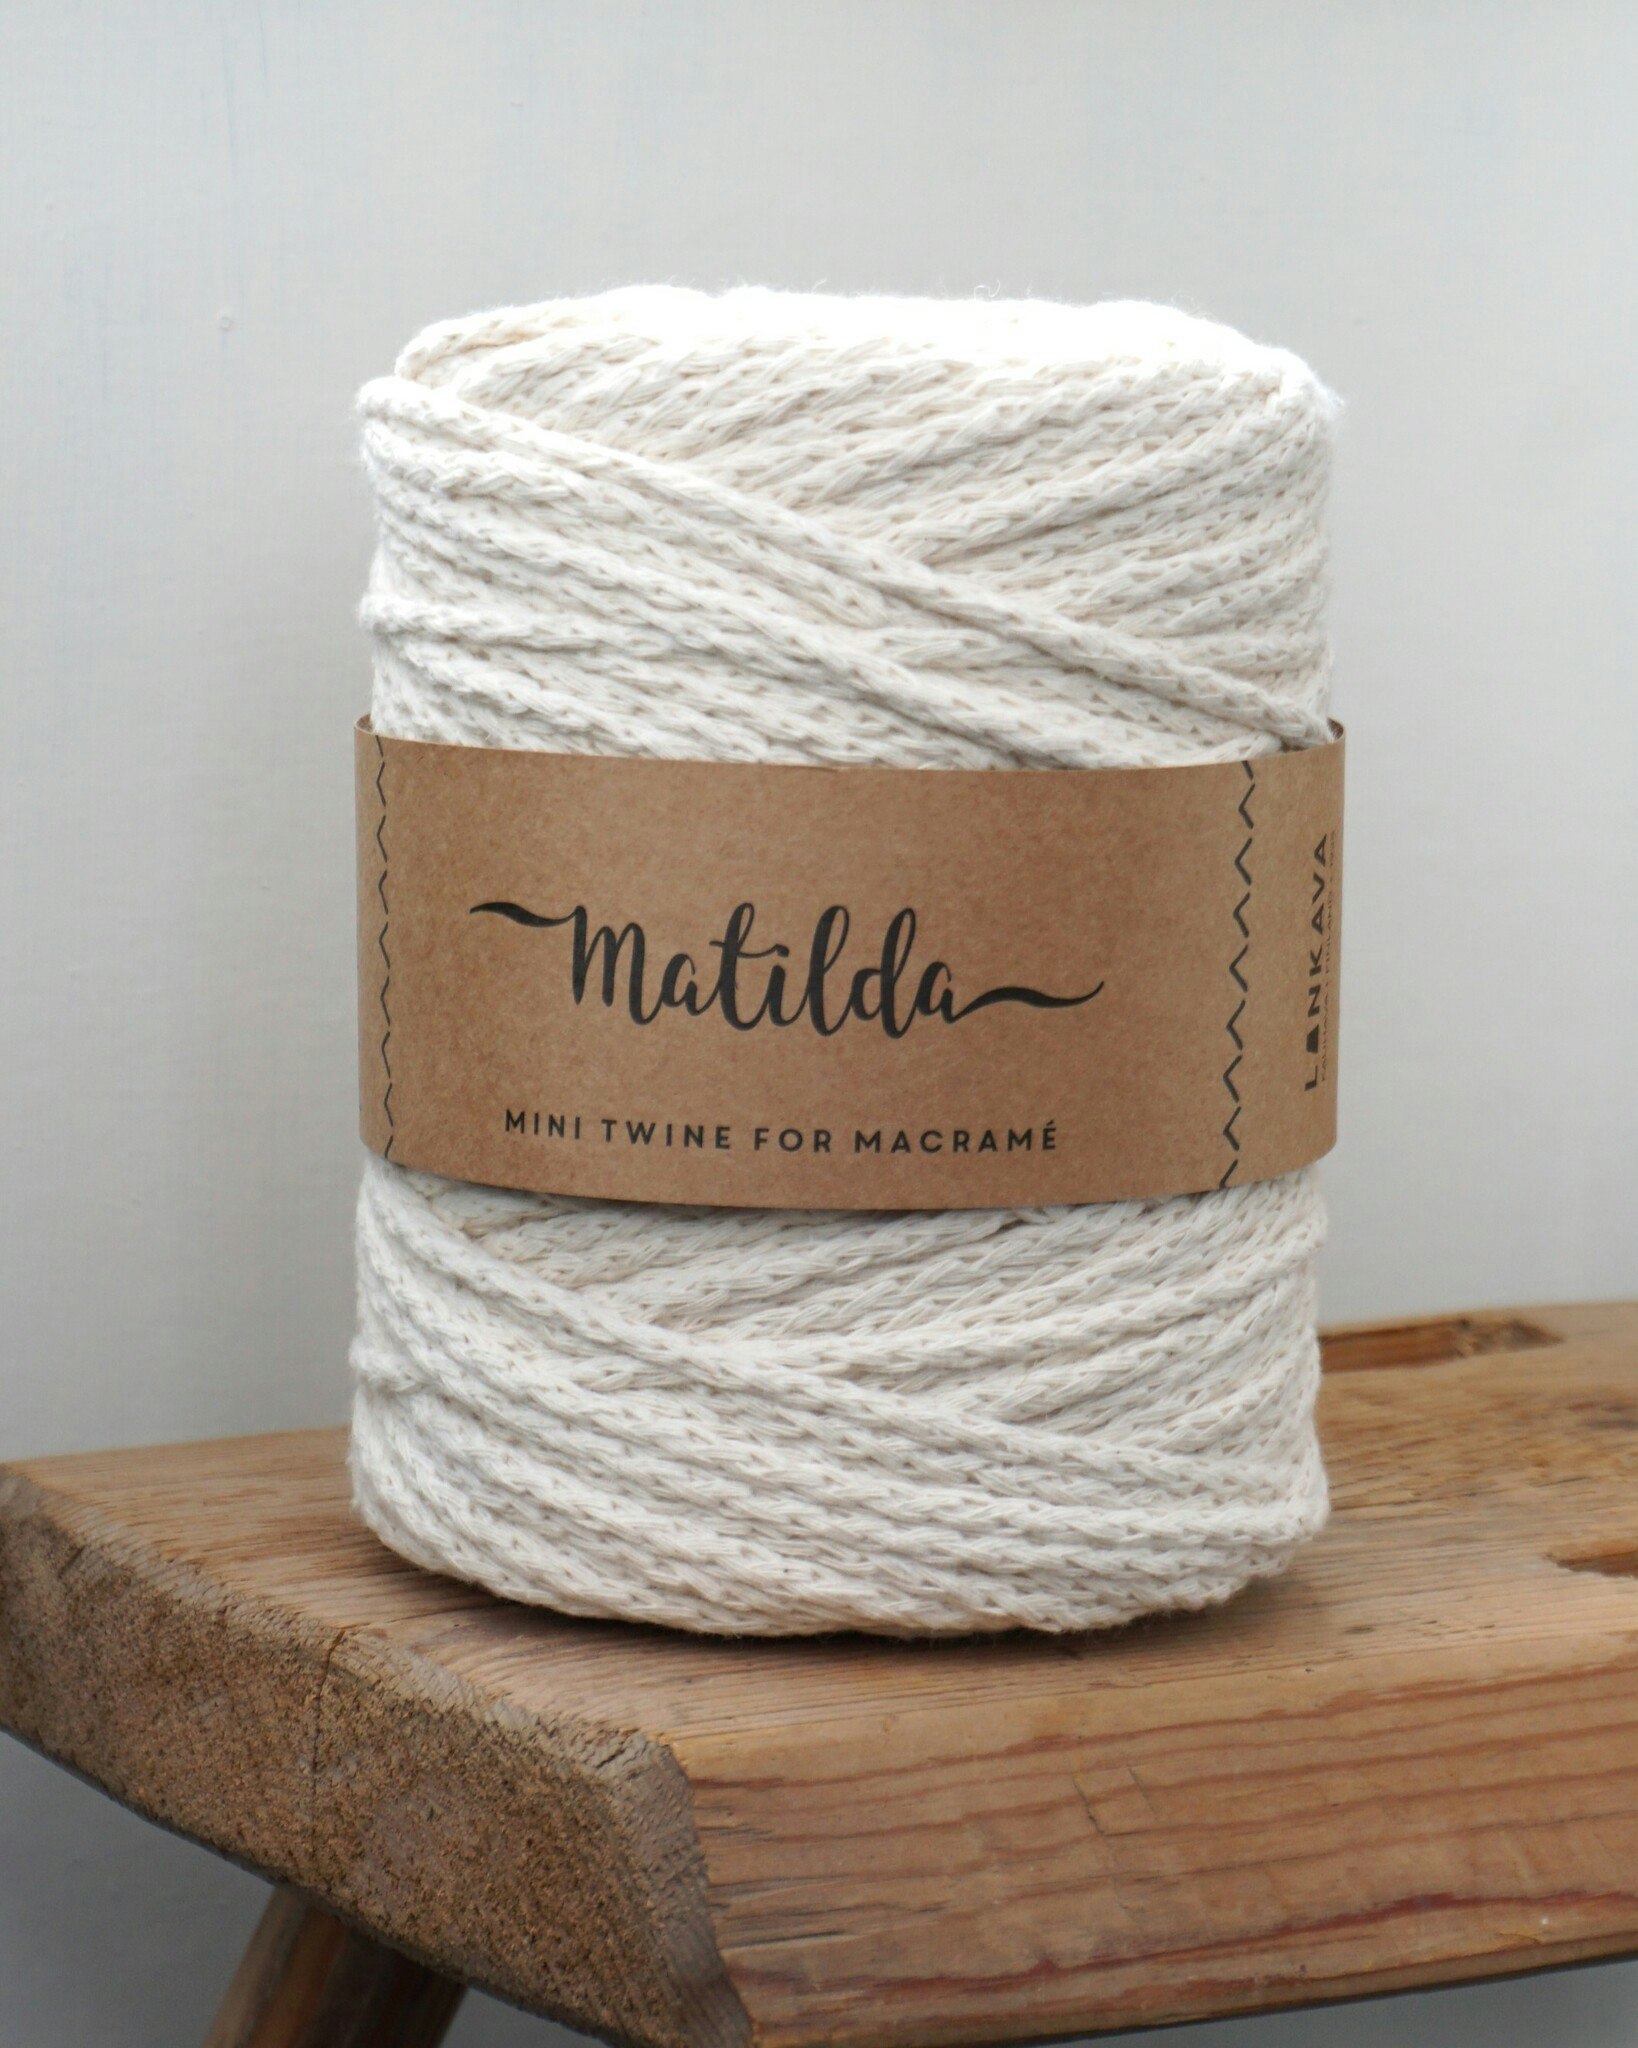 Matilda snörgarn, 4 mm tjockt i färgen naturvit och perfekt för olika handarbetsprojekt. vitt garn tillverkat av restfibrer från trikåindustrin för en miljövänlig process.